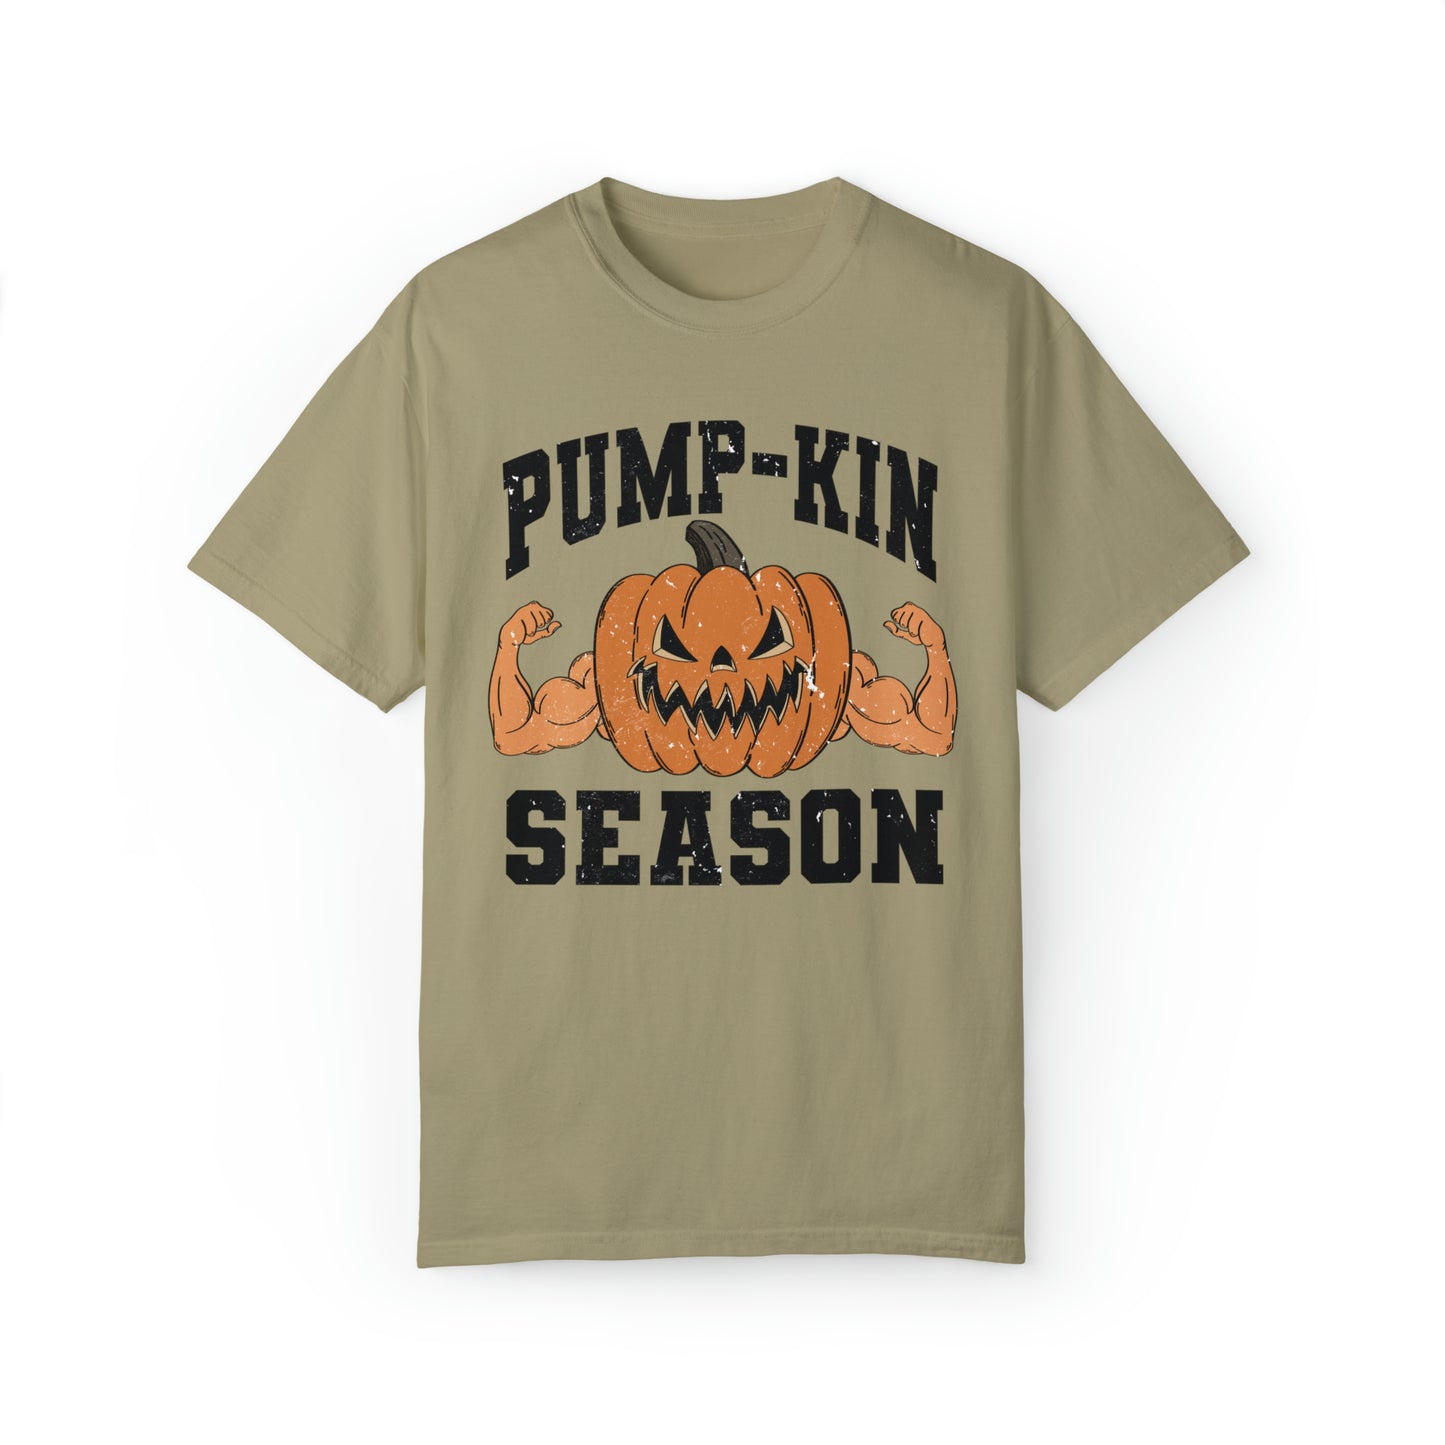 Pump-Kin Season Shirt